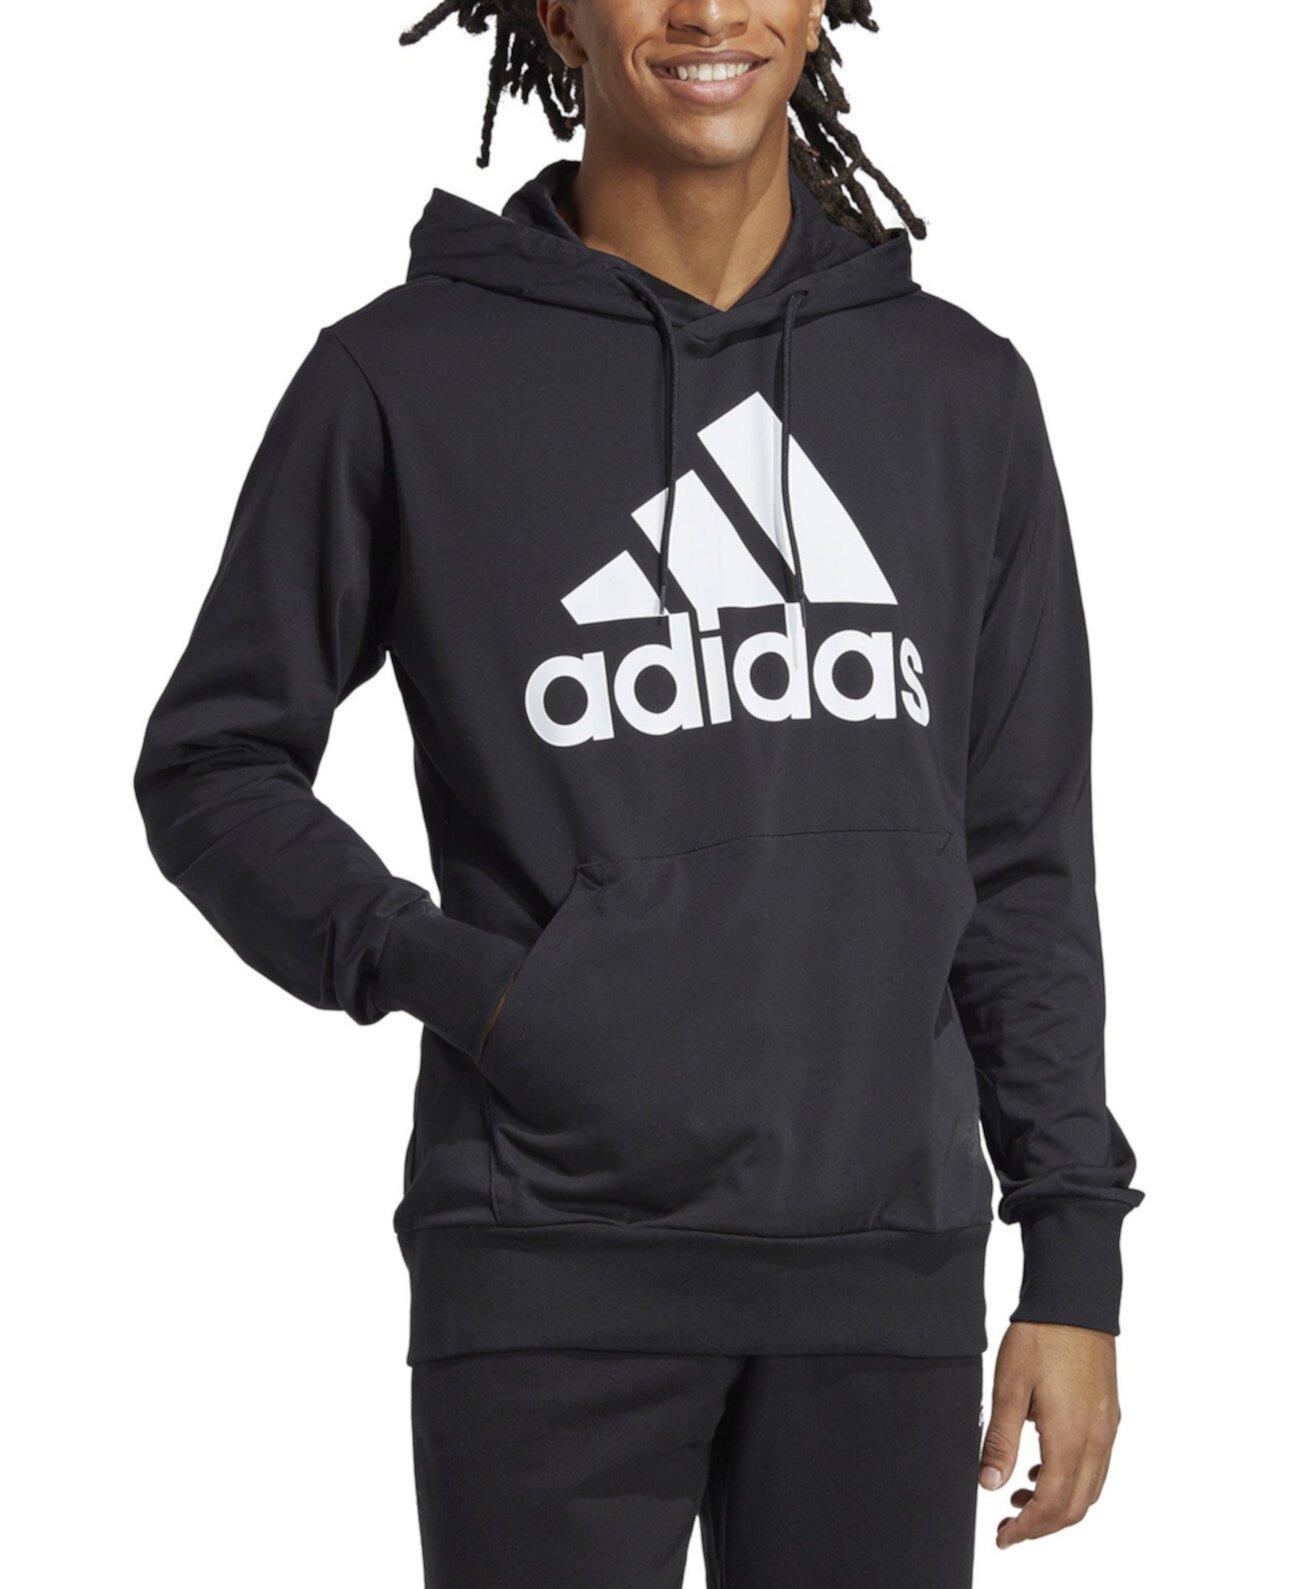 Мужской трикотажный пуловер с капюшоном и логотипом Adidas